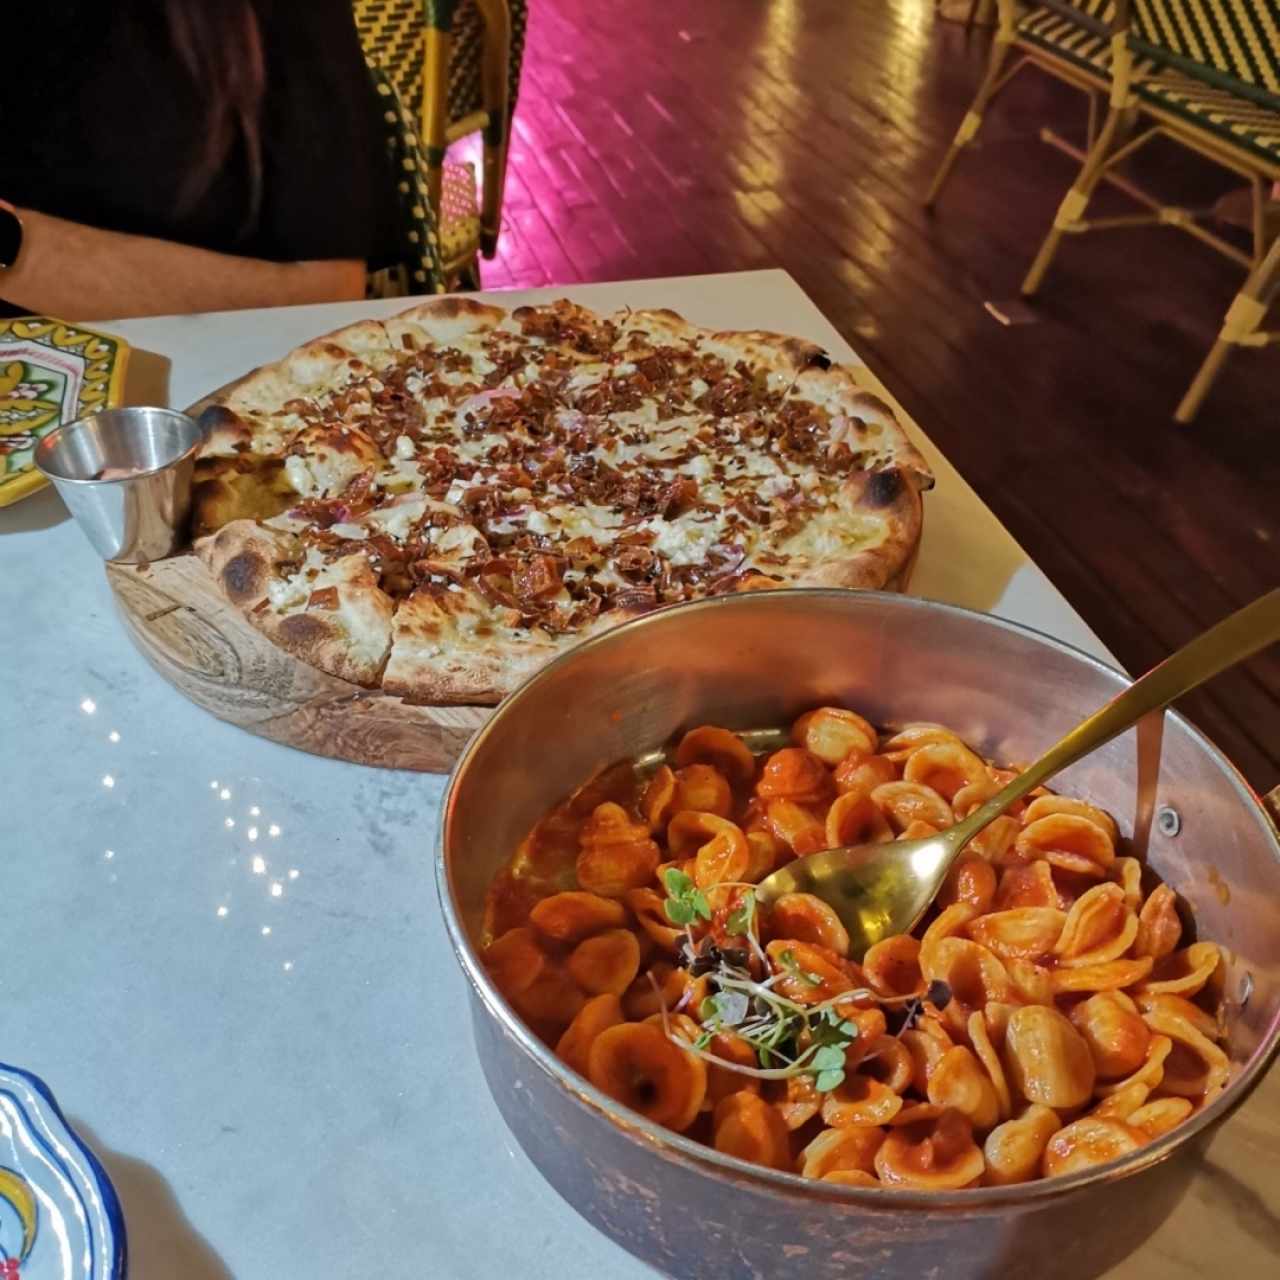 Pizza & pasta 